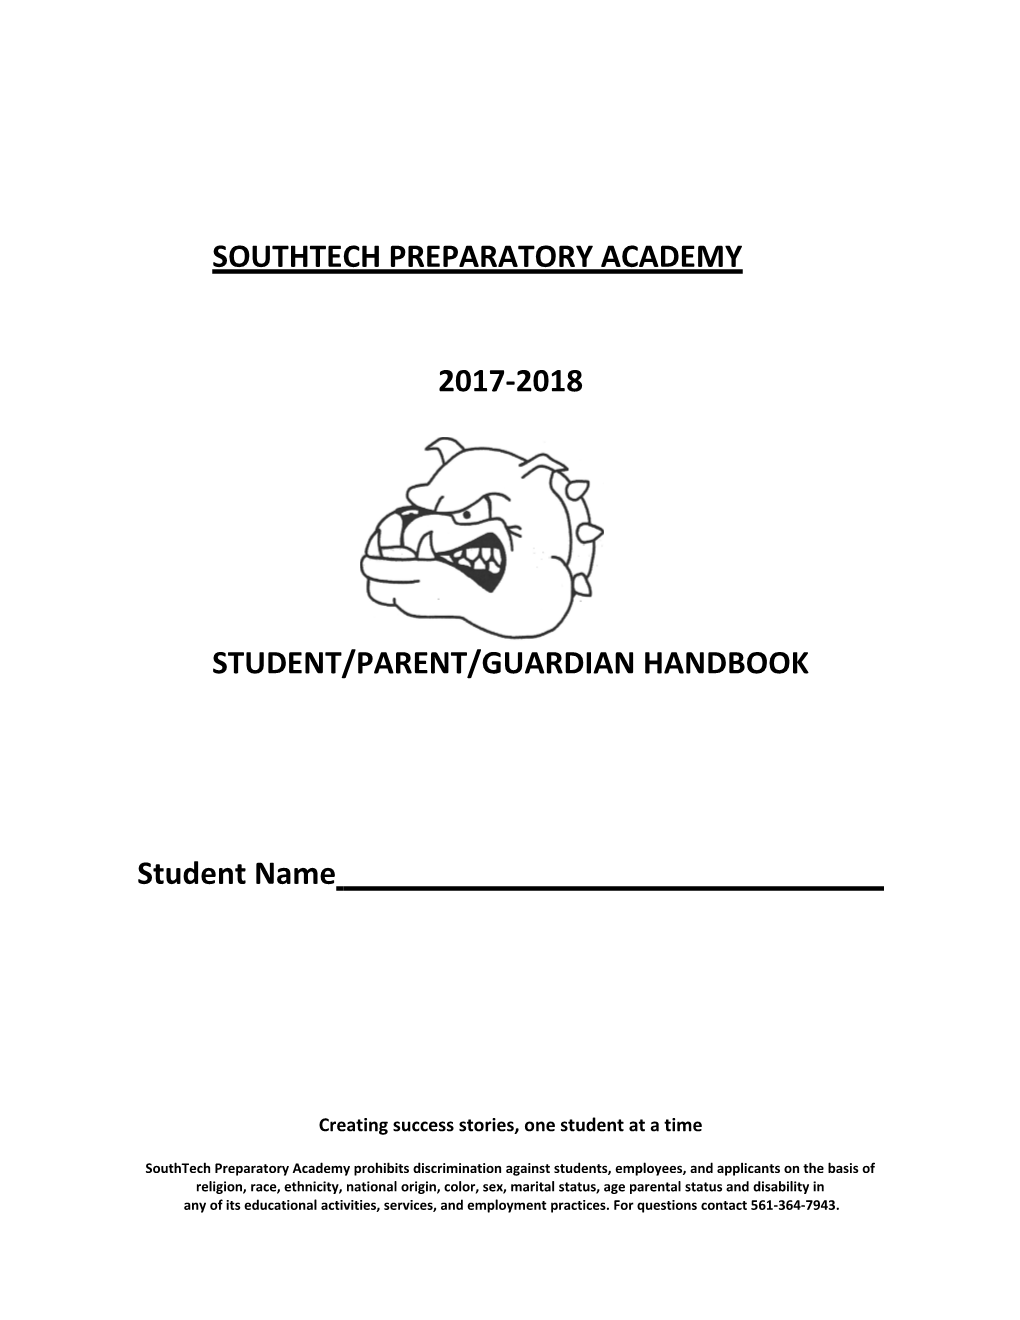 Student/Parent/Guardian Handbook